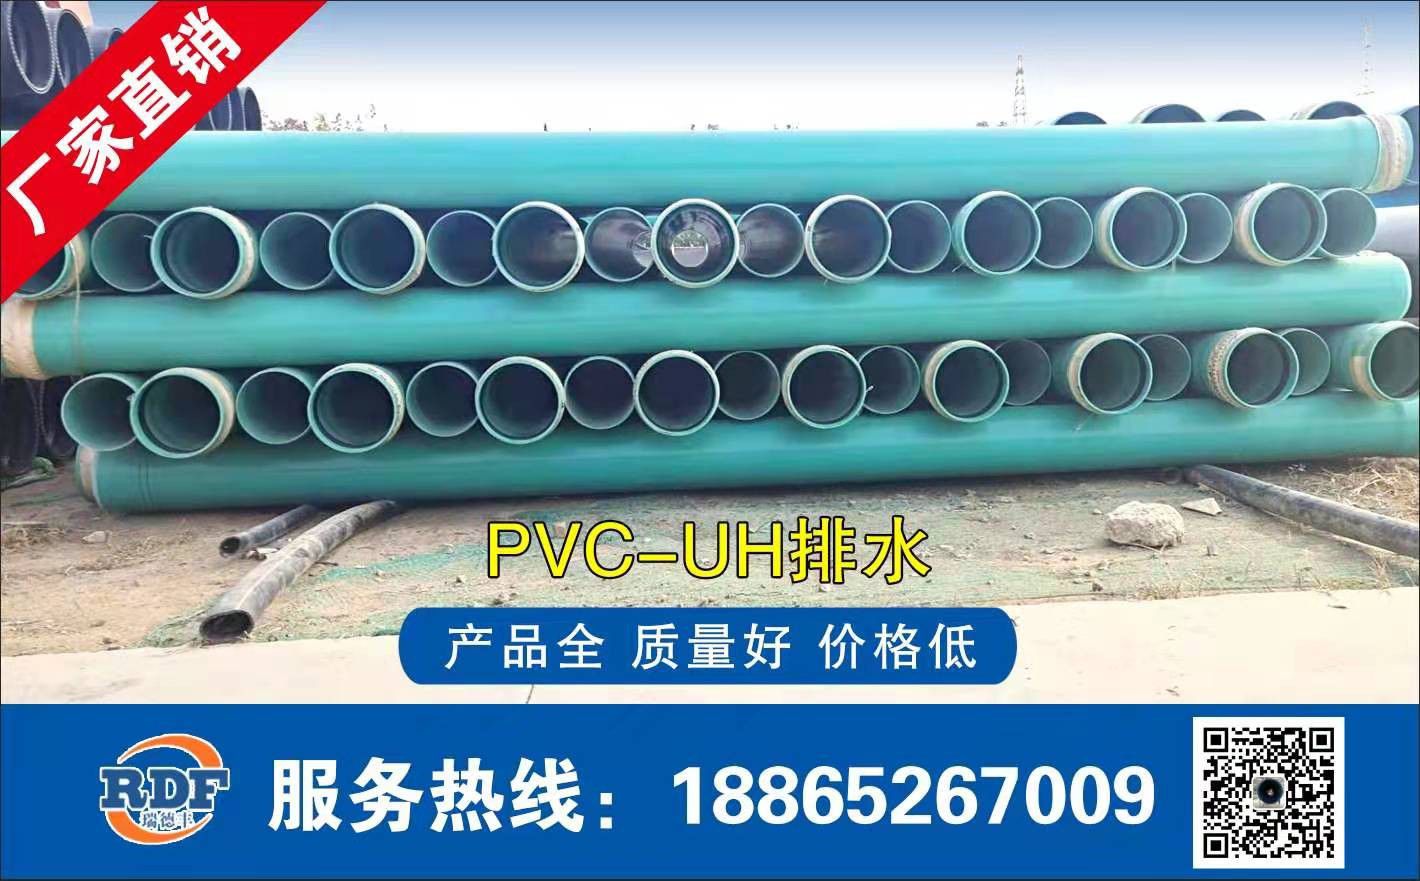 芜湖镜湖区PVC-O给水管热理炉的选择是热理工艺成功的关键